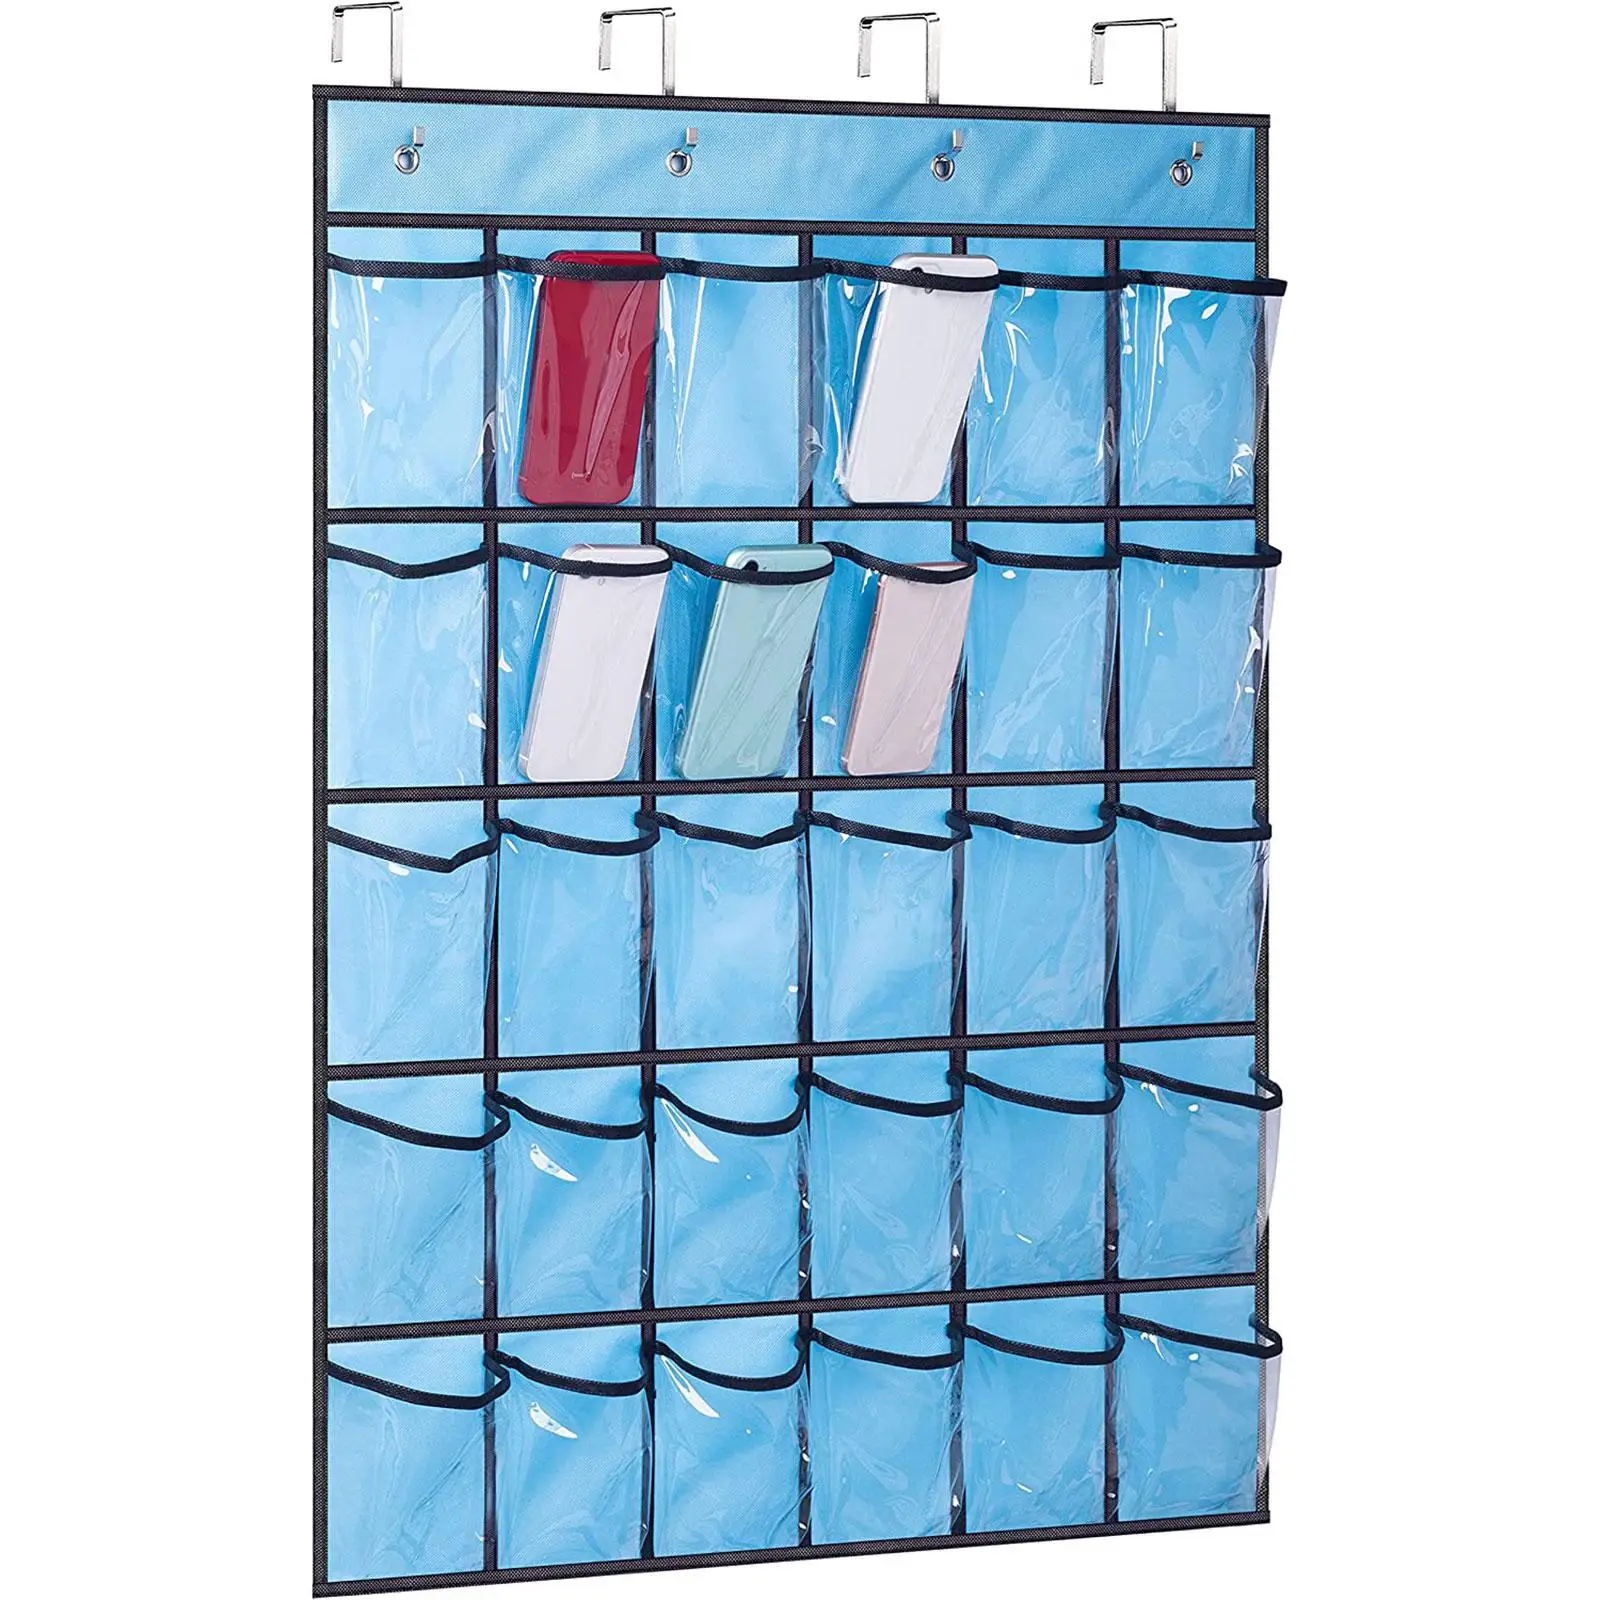 Door Hanging Organizer Rack Holder Hanging Storage Organizer Bag Socks Organizer Bag with Hooks 30 Pockets for Home Living Room